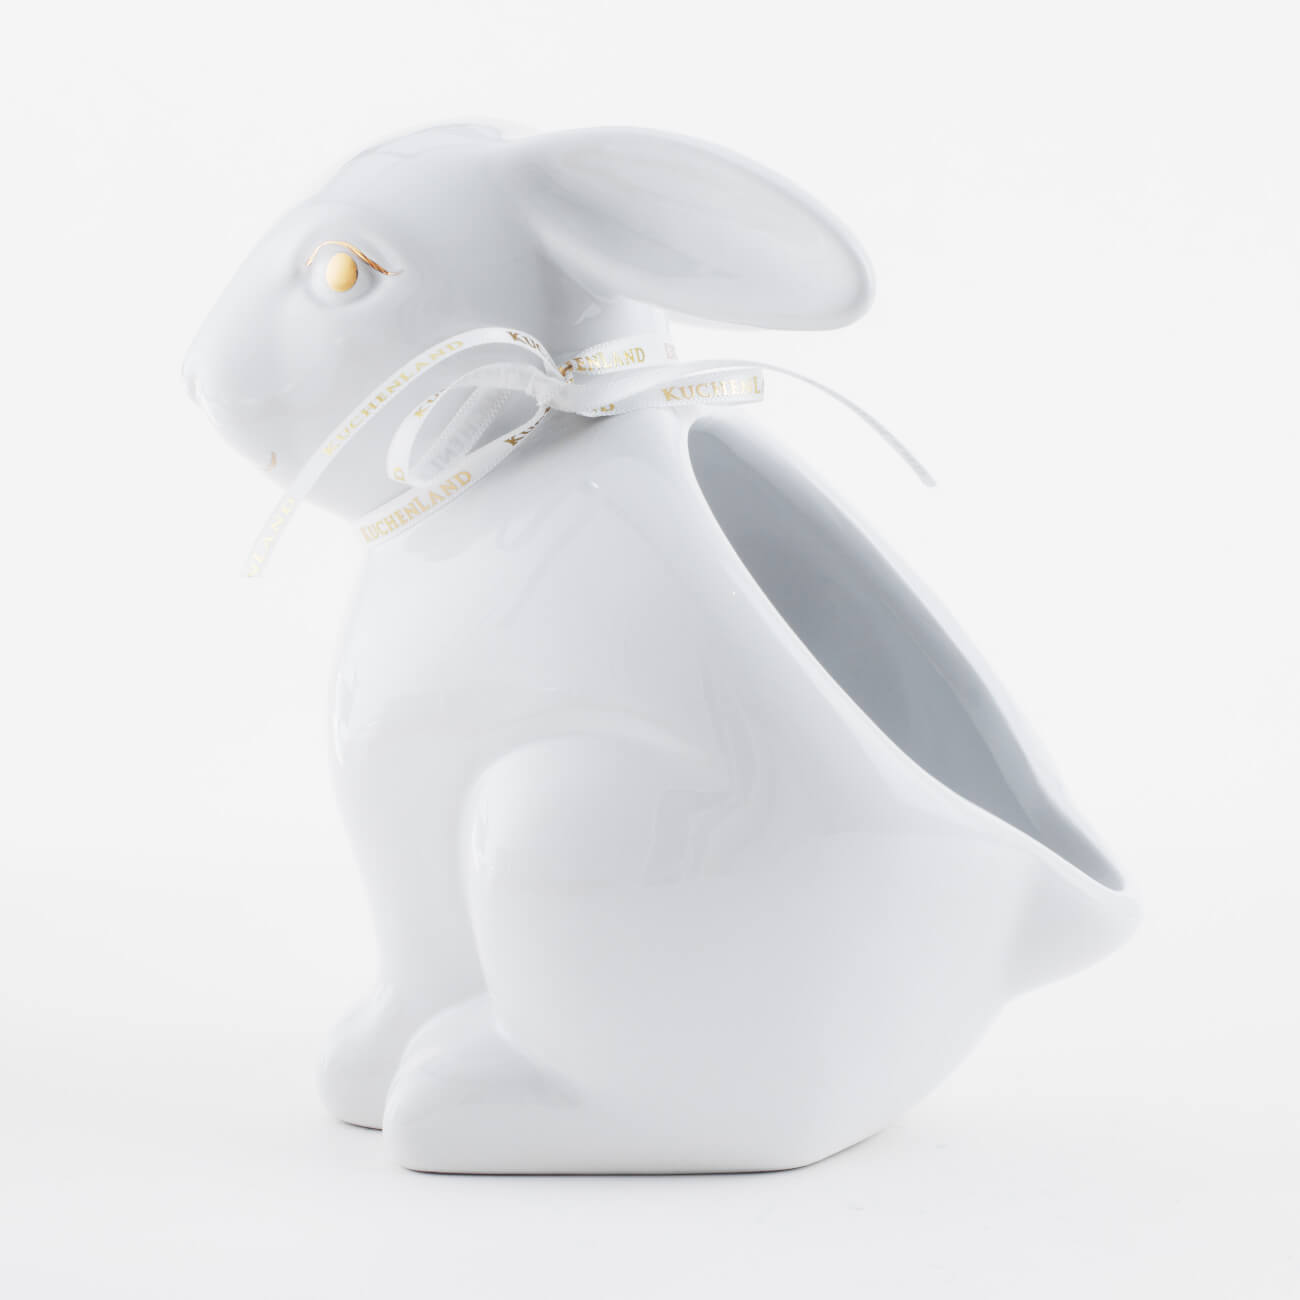 Конфетница, 17х17 см, керамика, белая, Кролик, Easter gold конфетница 20x16 см с ручкой керамика белая кролик с корзиной easter gold